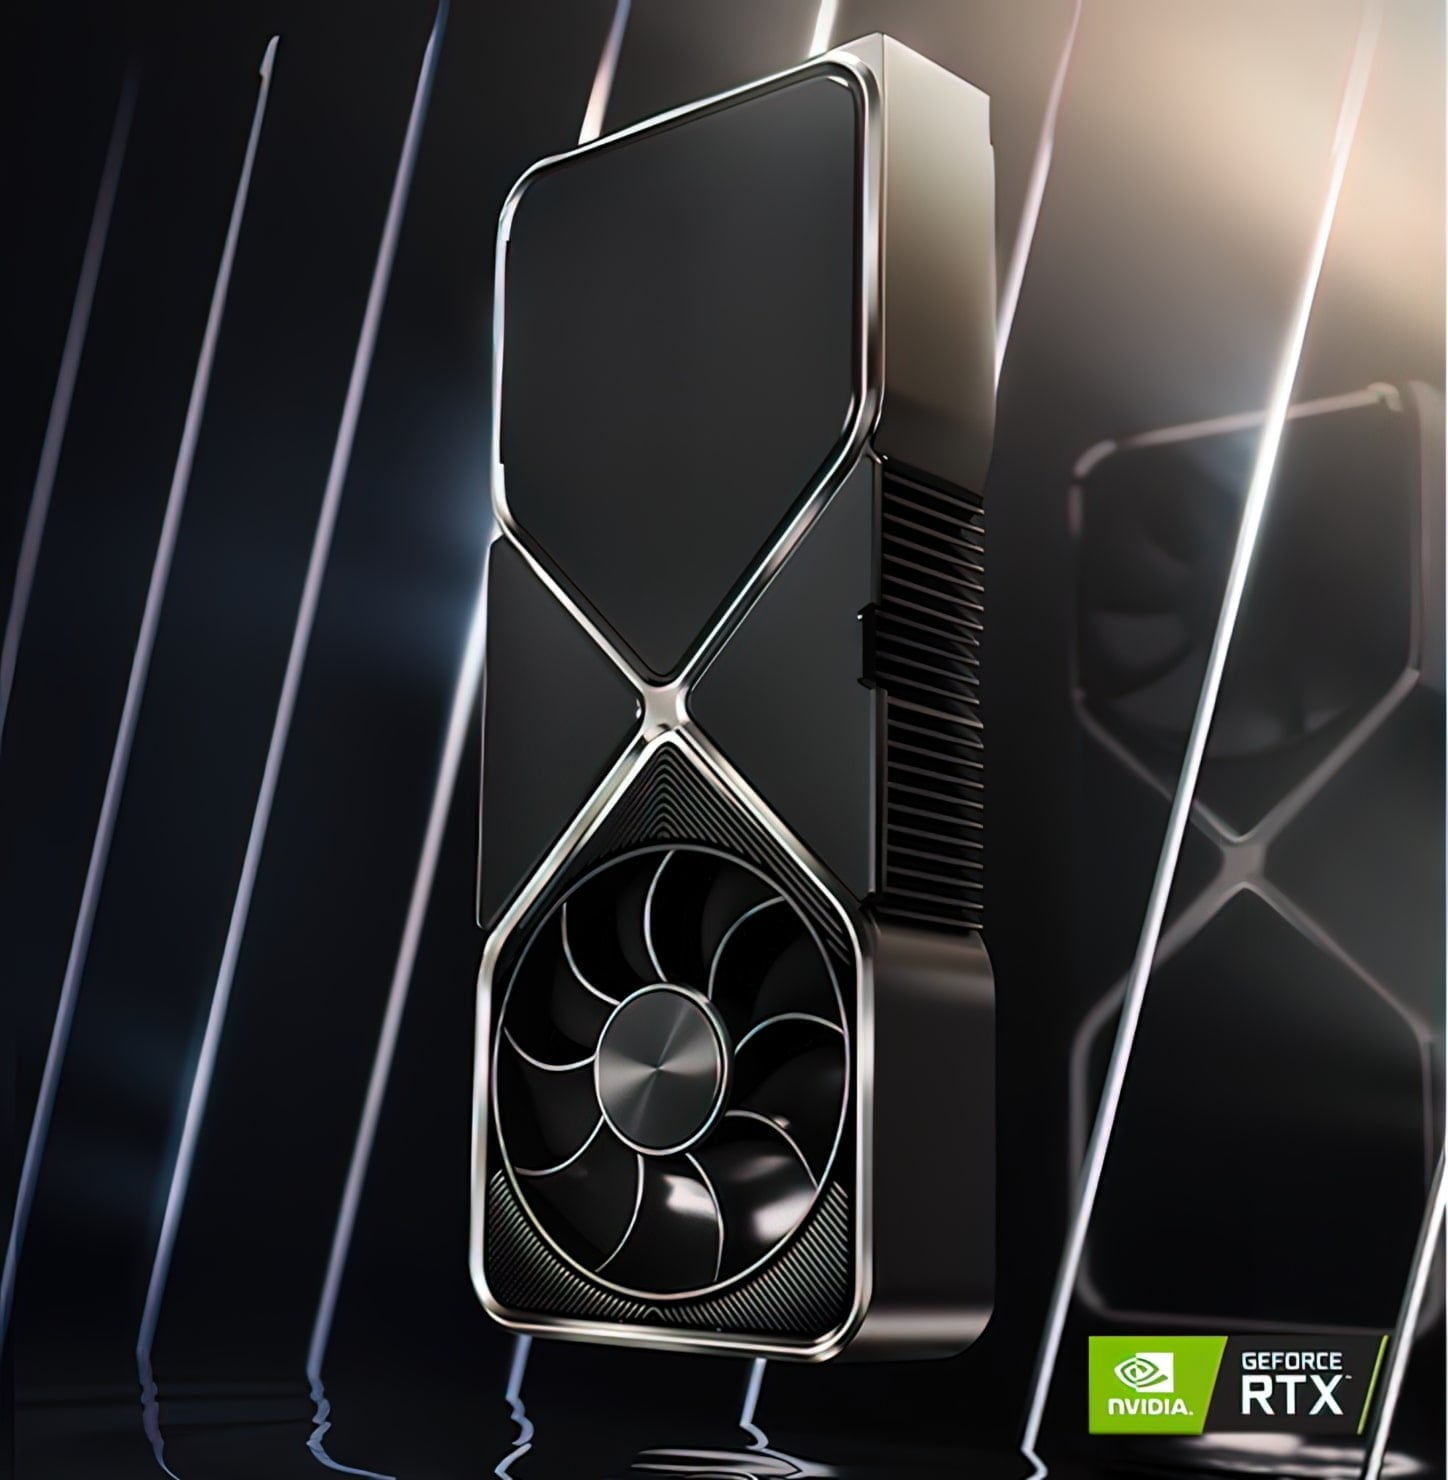 NVIDIA GeForce RTX 3090 Ti very compressed scale 6 00x Custom 1448x1480 1 MMOSITE - Thông tin công nghệ, review, thủ thuật PC, gaming